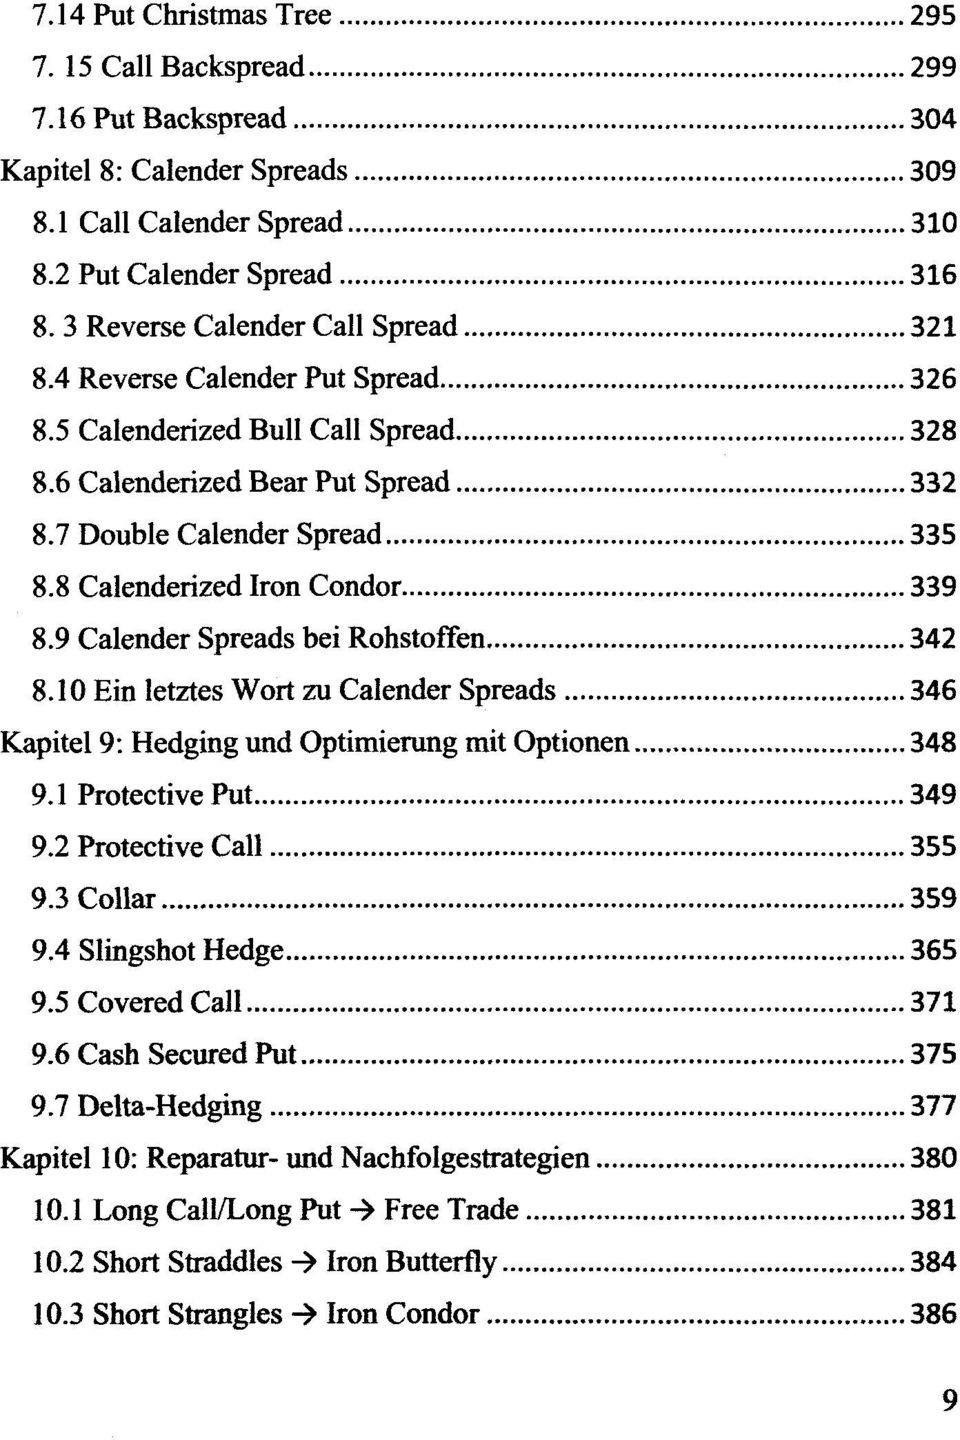 8 Calenderized Iron Condor 339 8.9 Calender Spreads bei Rohstoffen 342 8.10 Ein letztes Wort zu Calender Spreads 346 Kapitel 9: Hedging und Optimierung mit Optionen 348 9.1 Protective Put 349 9.